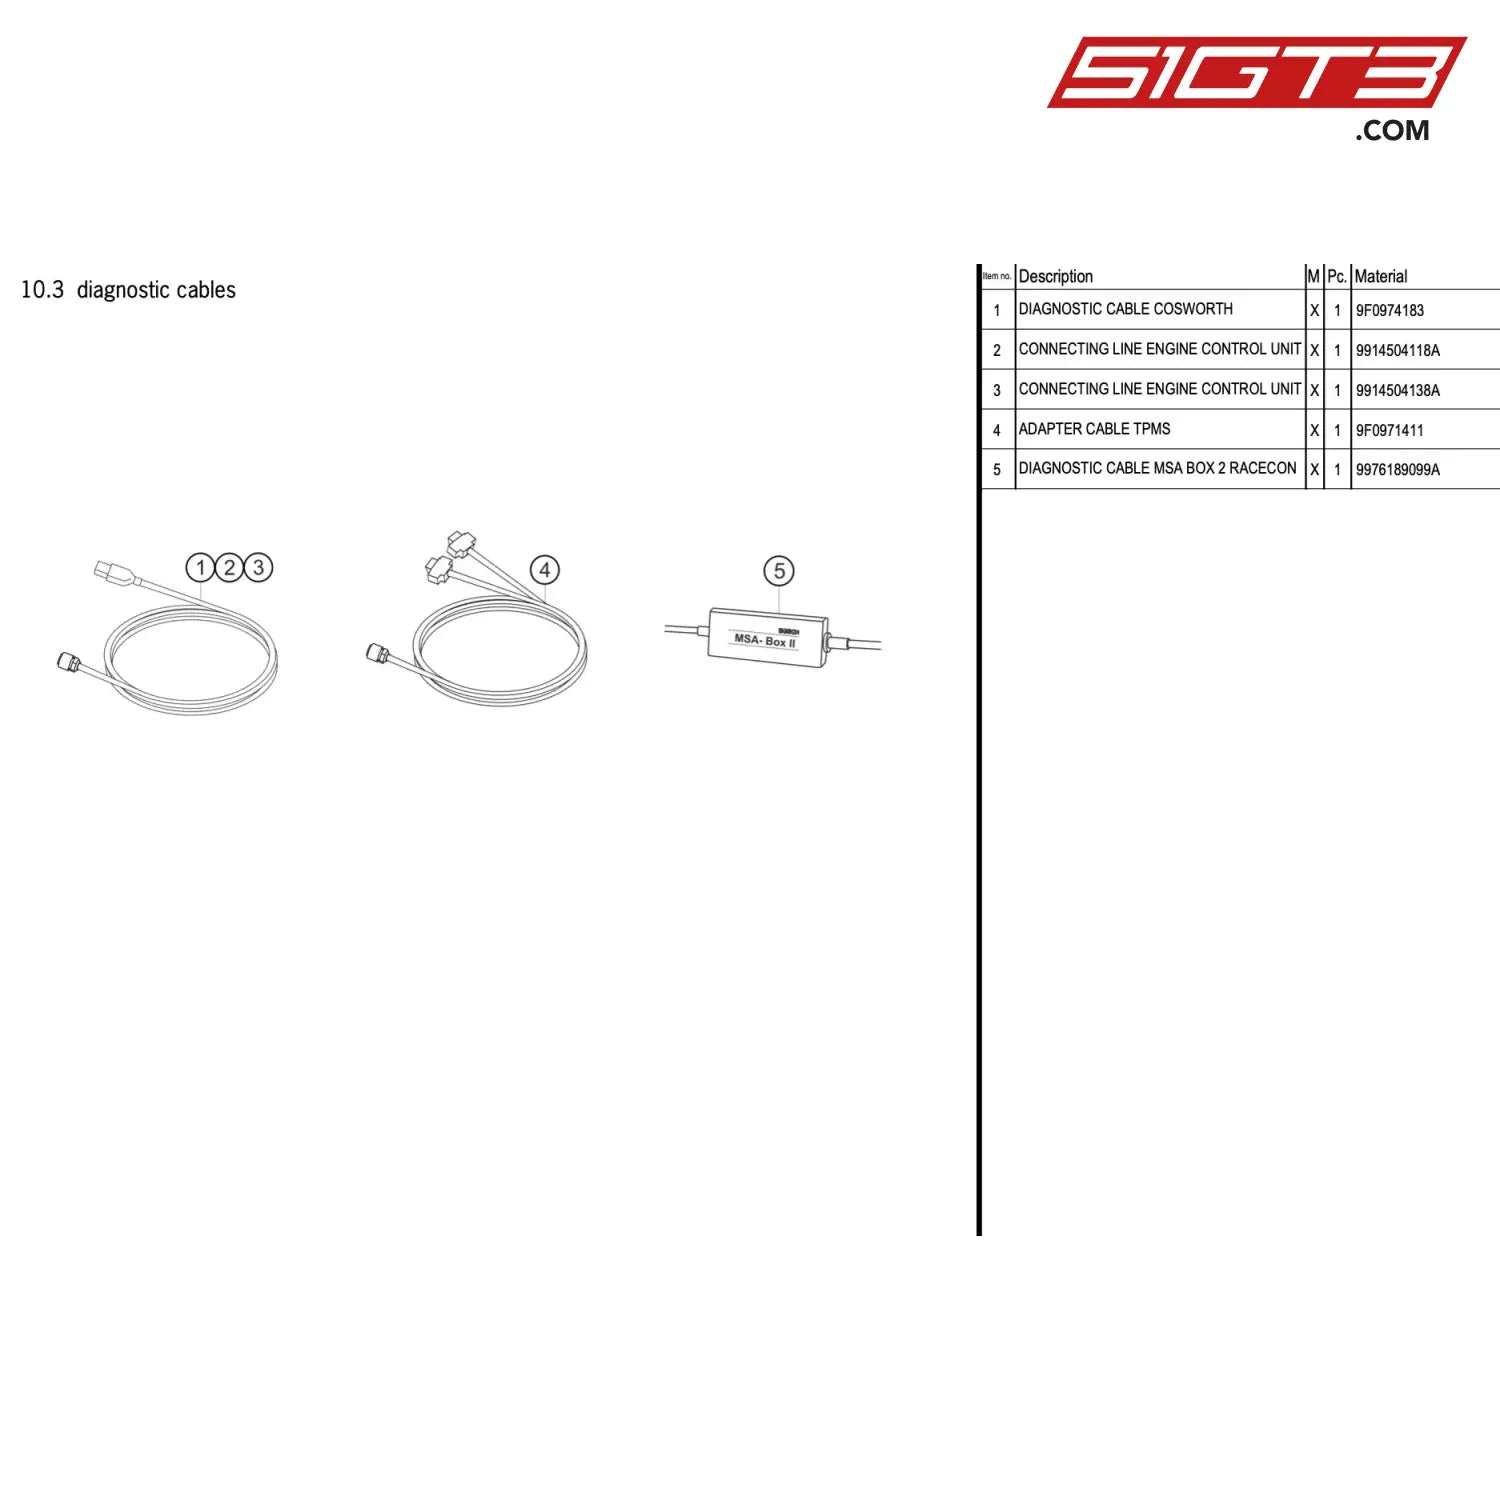 Connecting Line Engine Control Unit - 9914504138A [Porsche 911 Gt3 R Type 991 (Gen 2)] Diagnostic